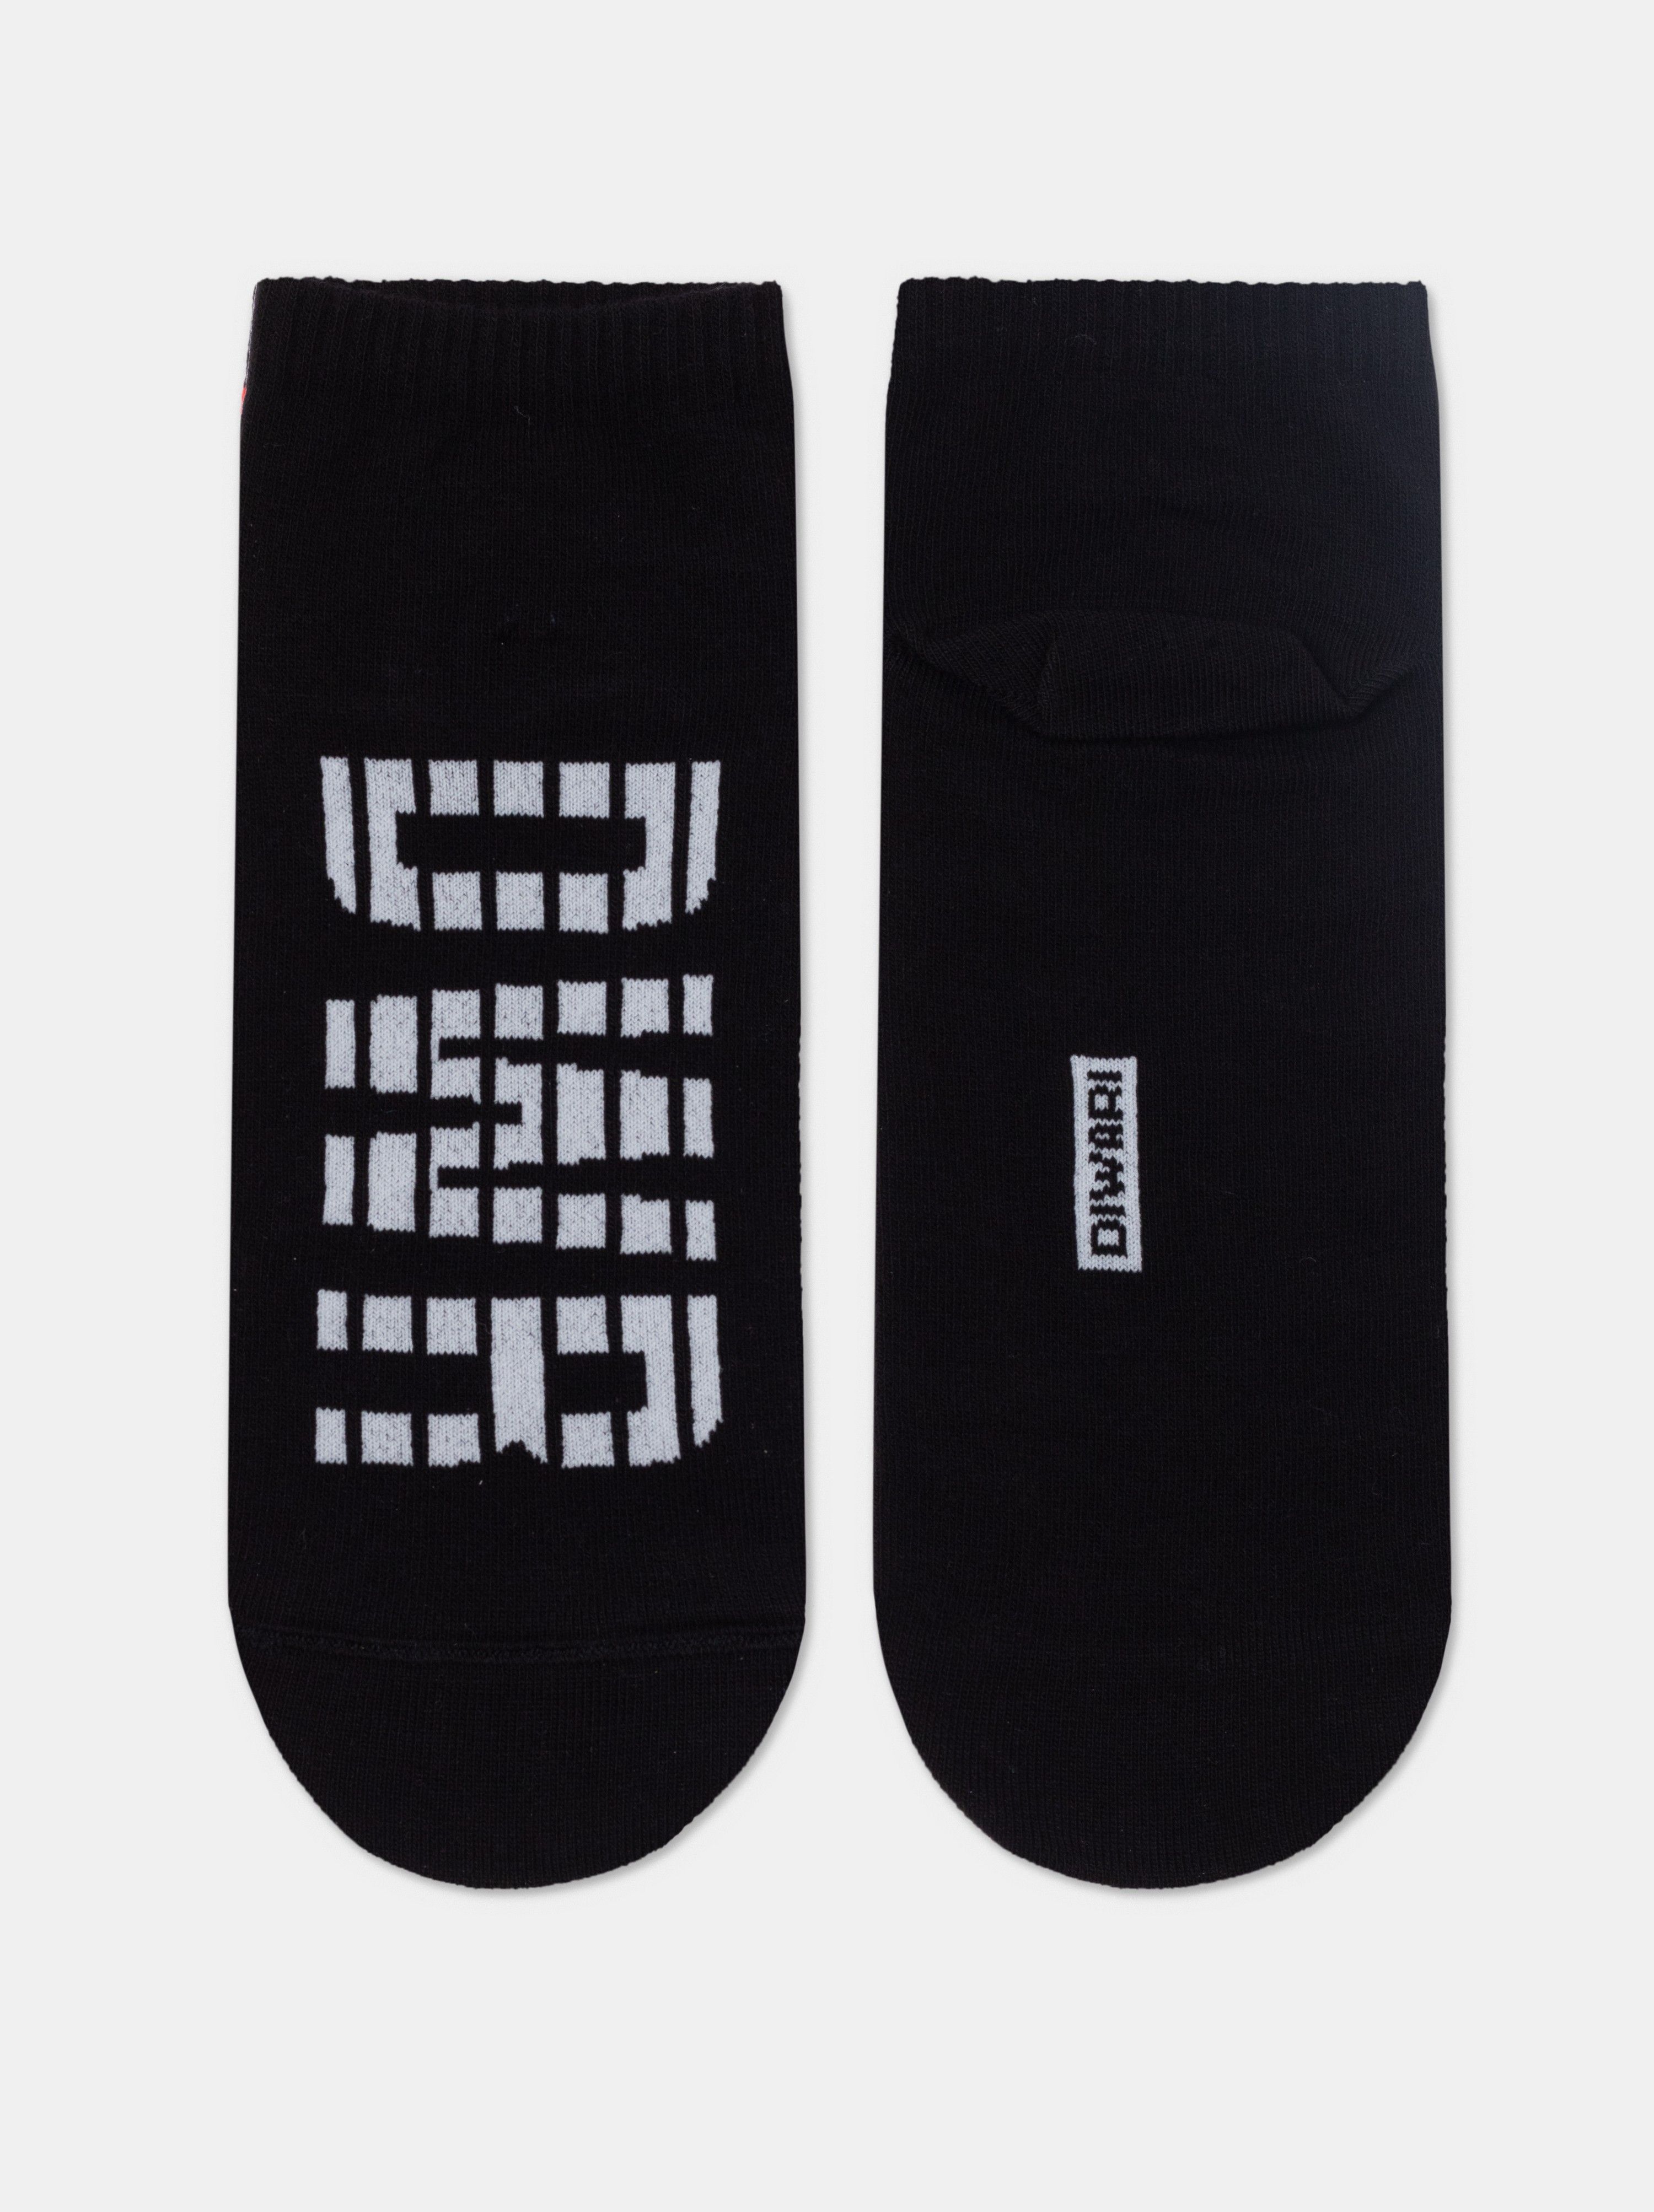 Короткие носки из хлопка с отсылкой к логотипу бренда Conte ⭐️, цвет серый, размер 40-41